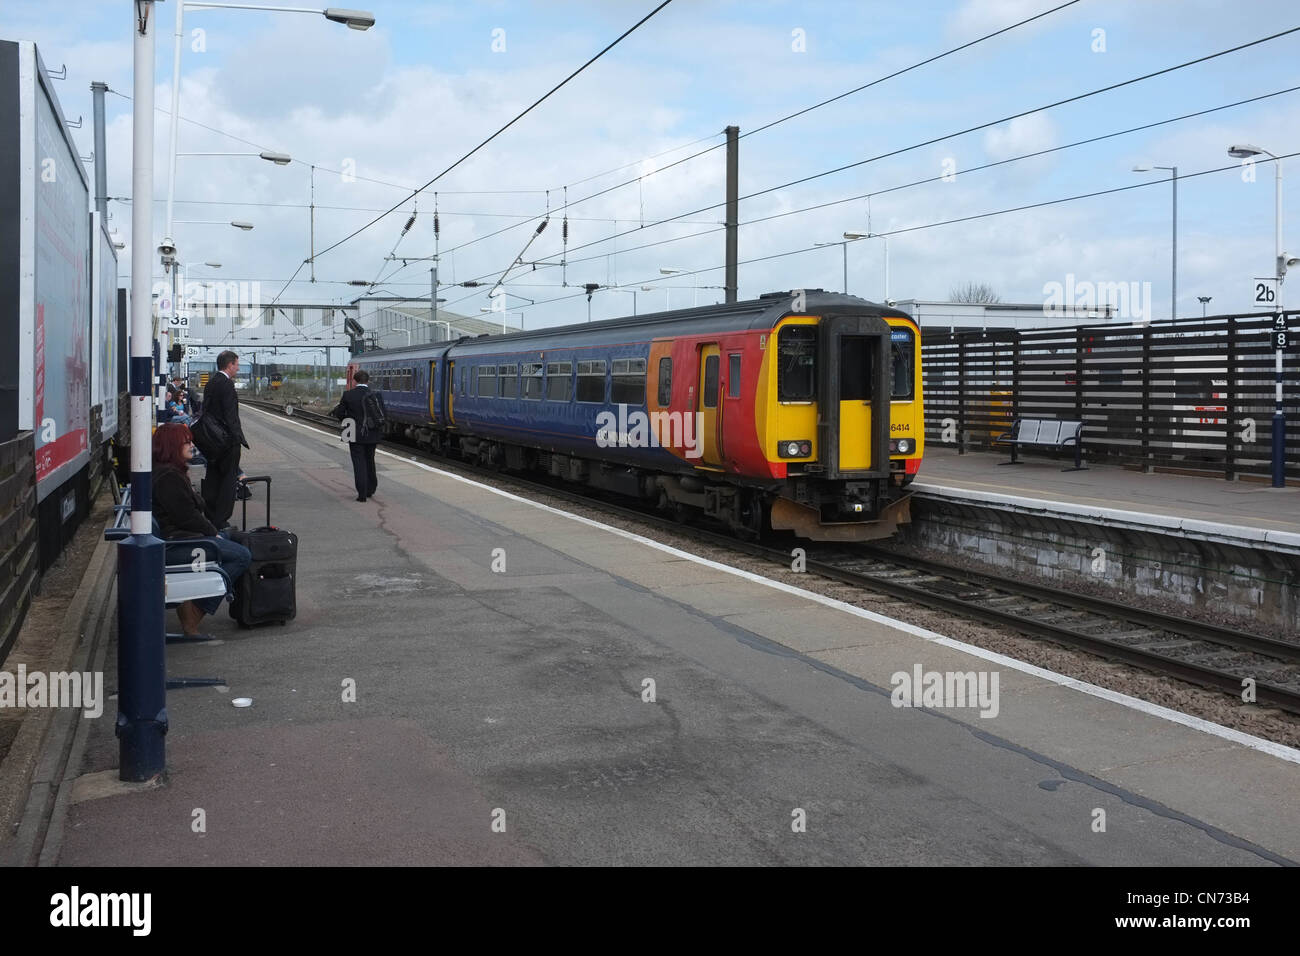 158 East Midlands trains diesel de classe à Peterborough Railway Station Banque D'Images